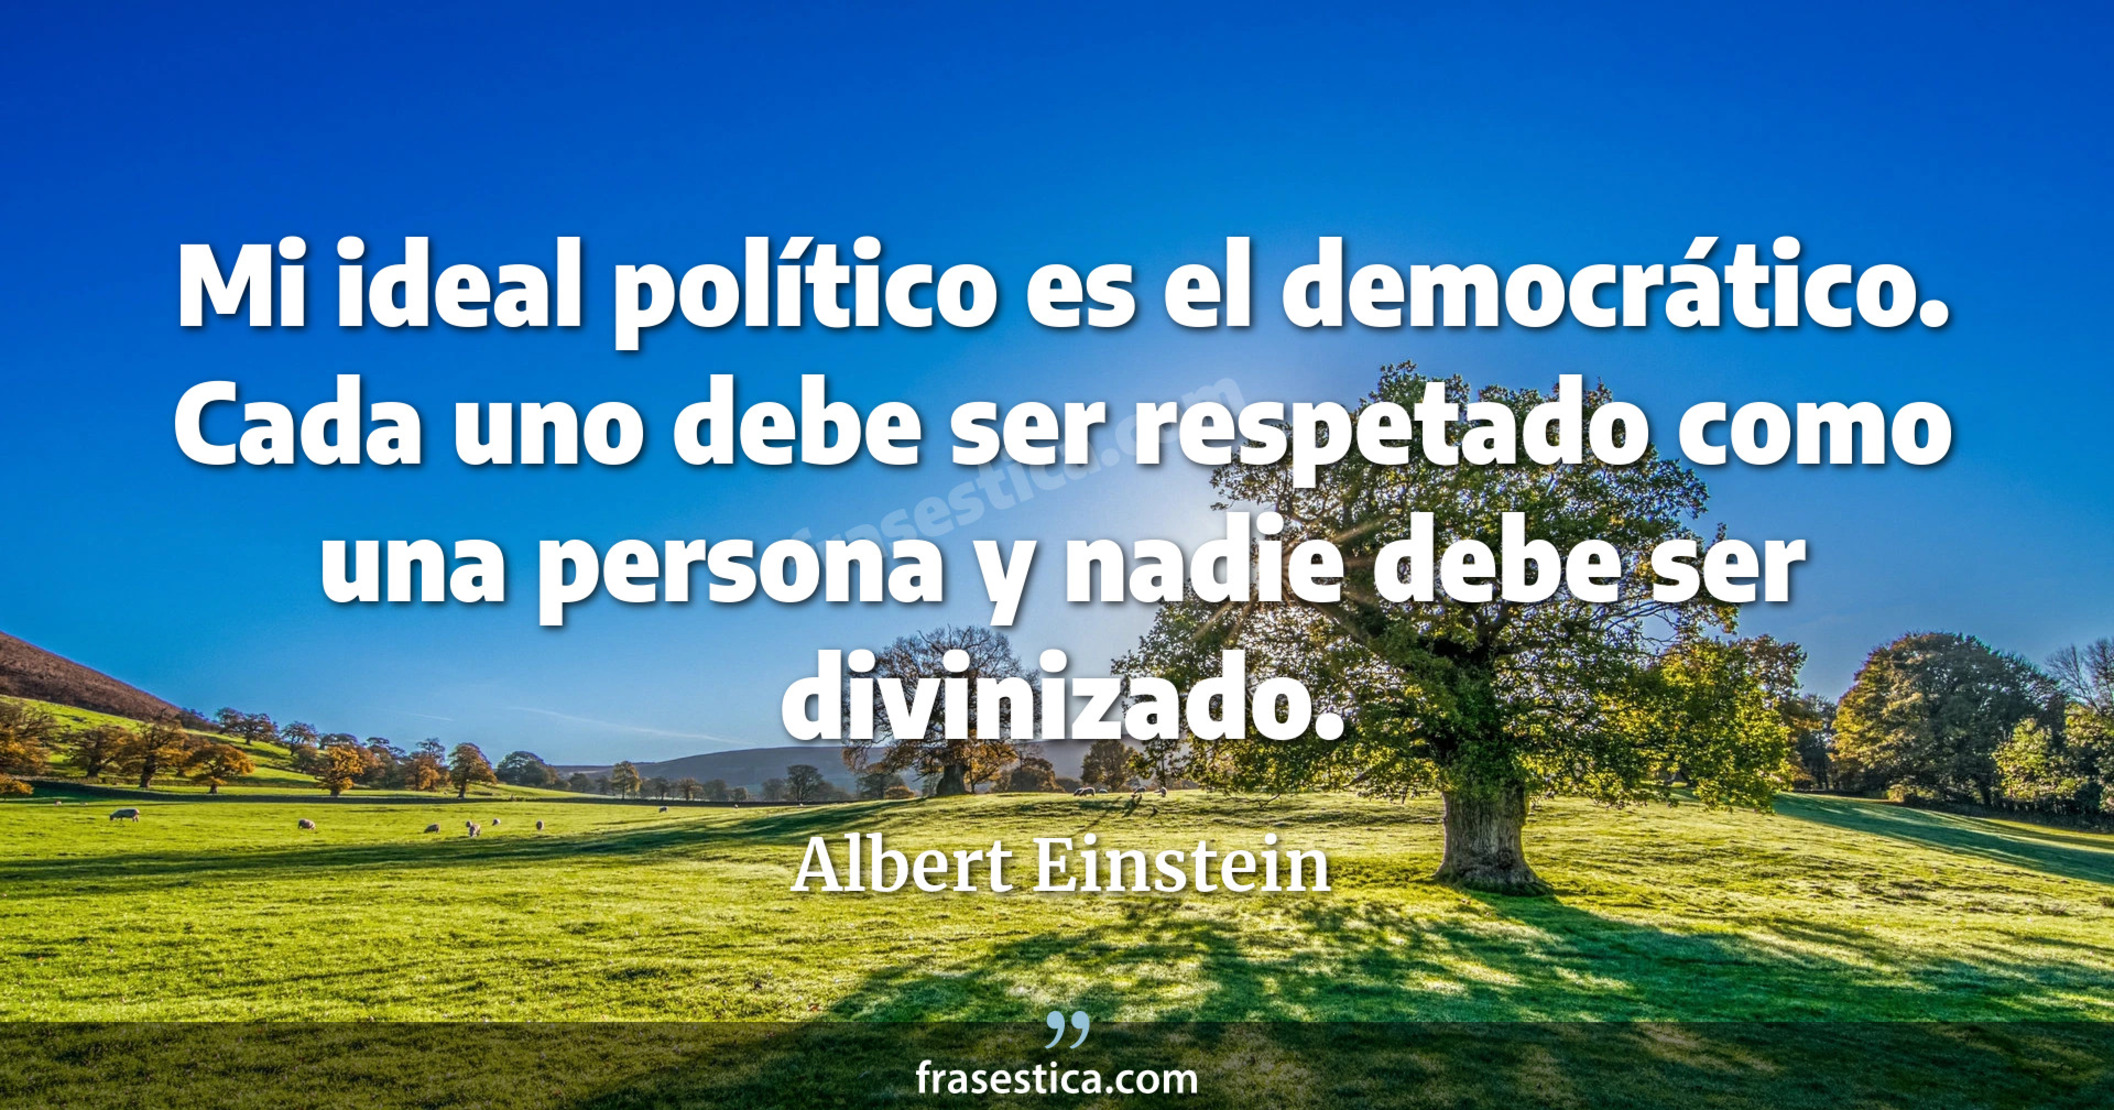 Mi ideal político es el democrático. Cada uno debe ser respetado como una persona y nadie debe ser divinizado. - Albert Einstein